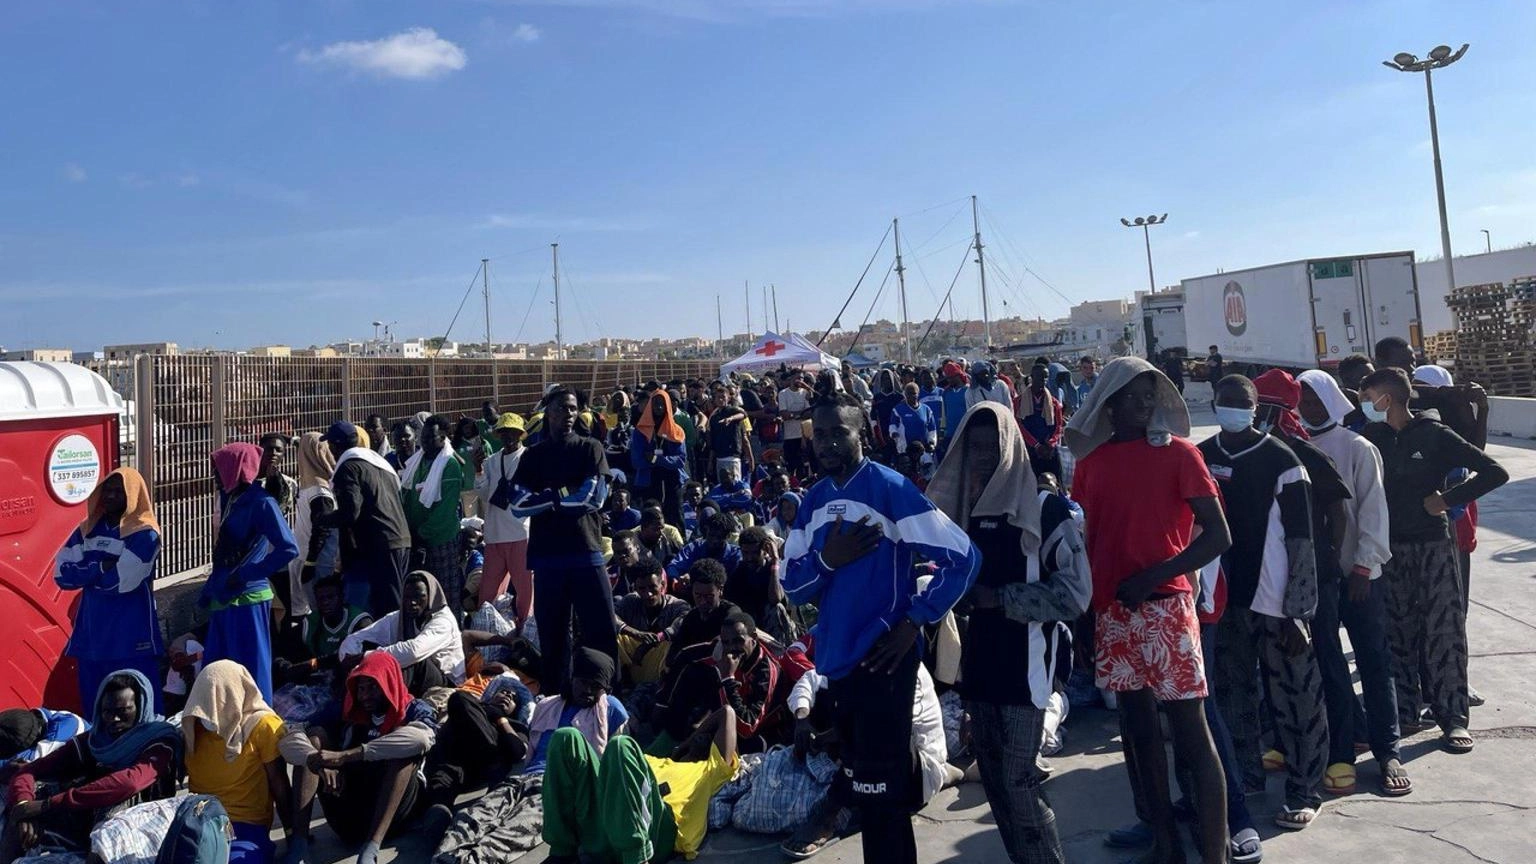 Lampedusa e Meloni pronti a collaborare per aiuti" (90 characters)"